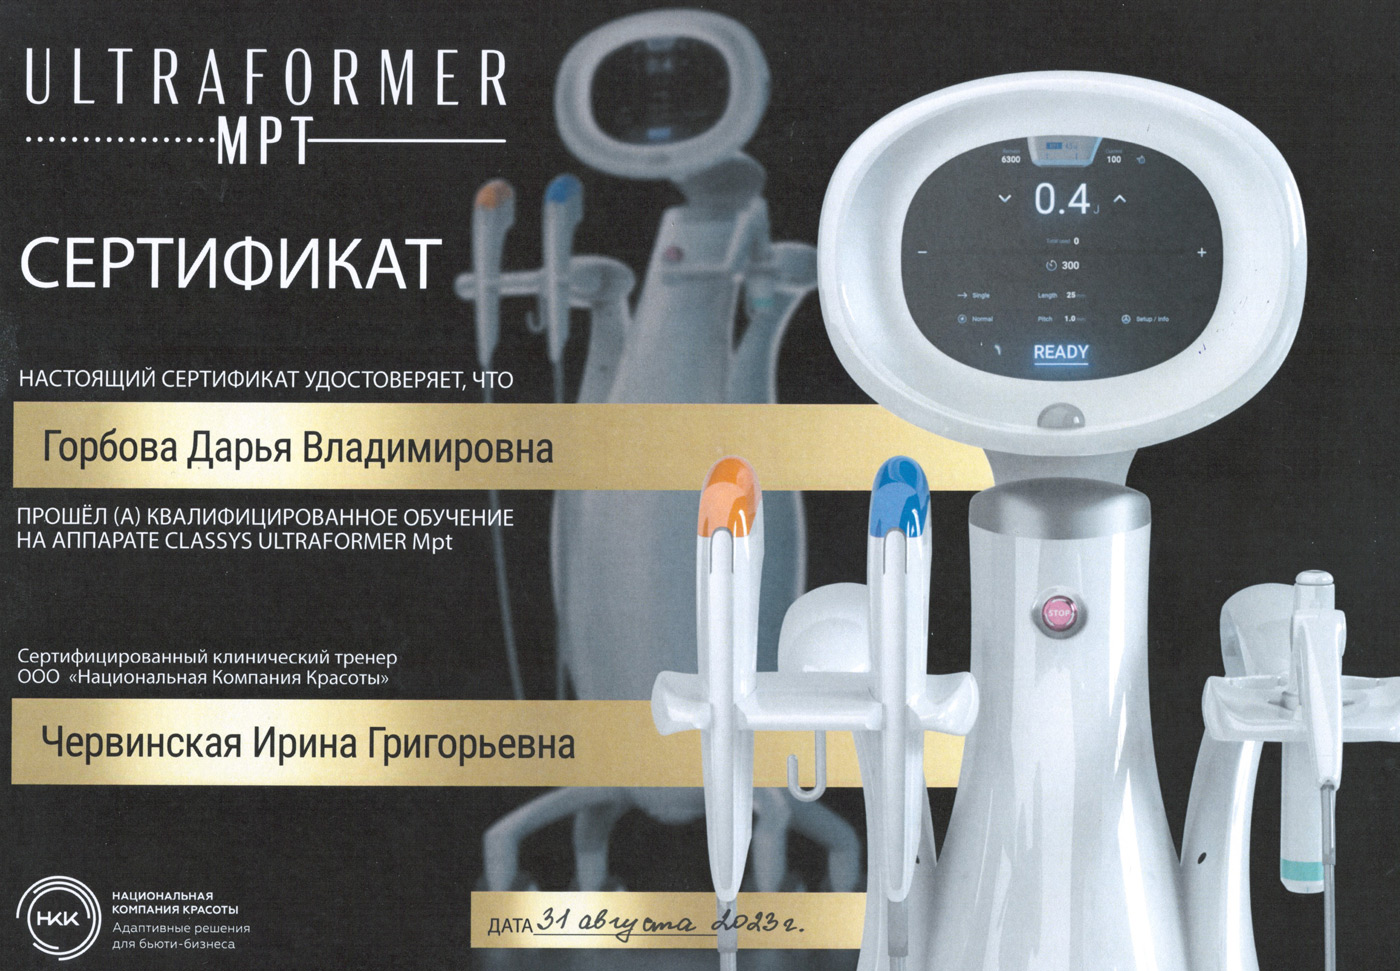 Сертификат — «Квалифицированное обучение на аппарате Classys Ultraformer MPT». Горбова Дарья Владимировна